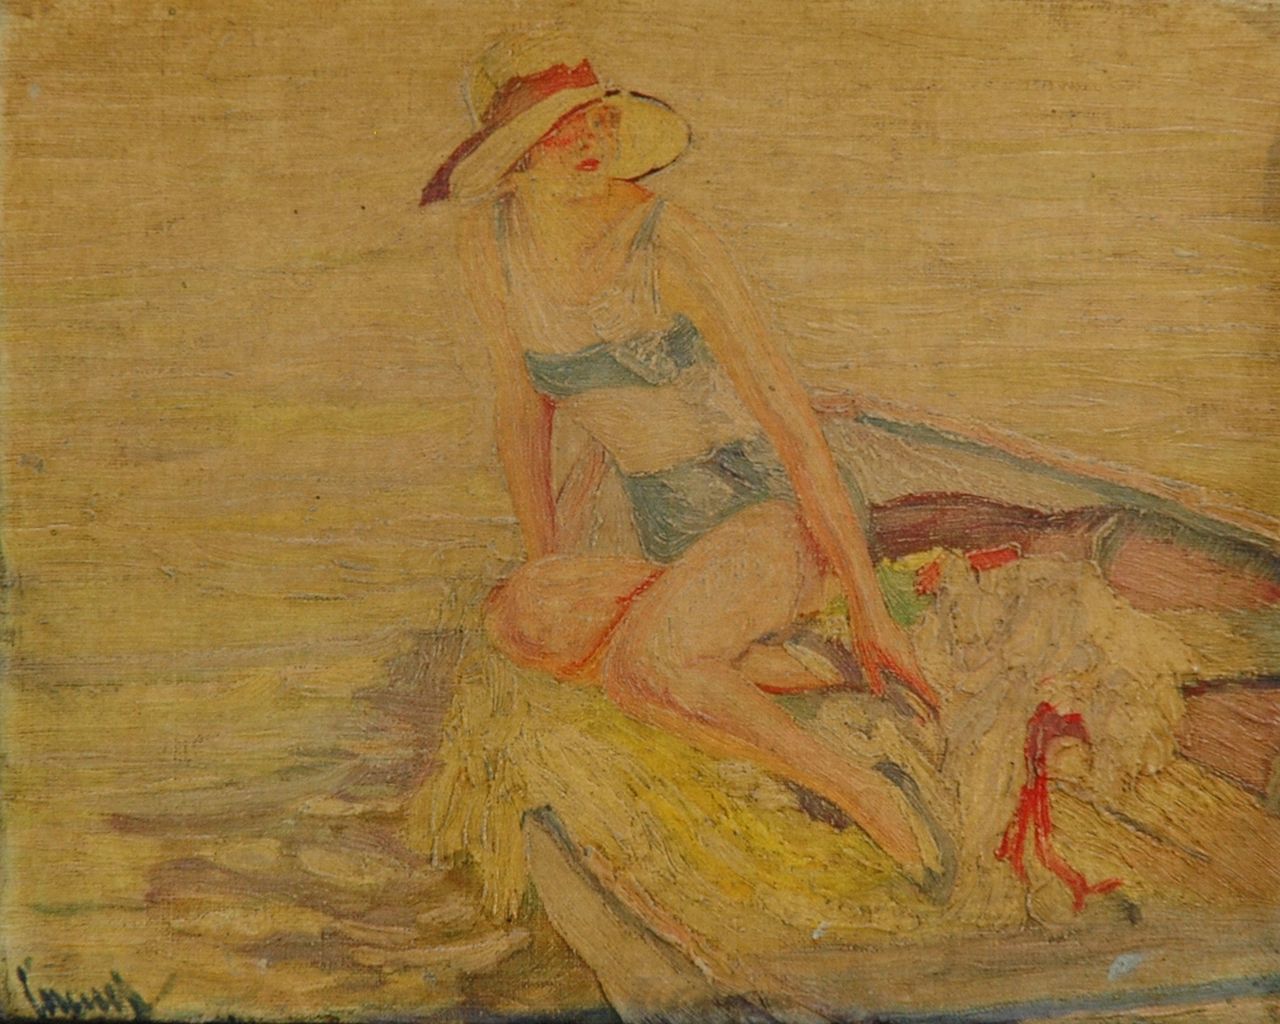 Edward Cucuel | Sunbathing on a boat, Öl auf Leinwand, 24,0 x 30,0 cm, signed l.l.